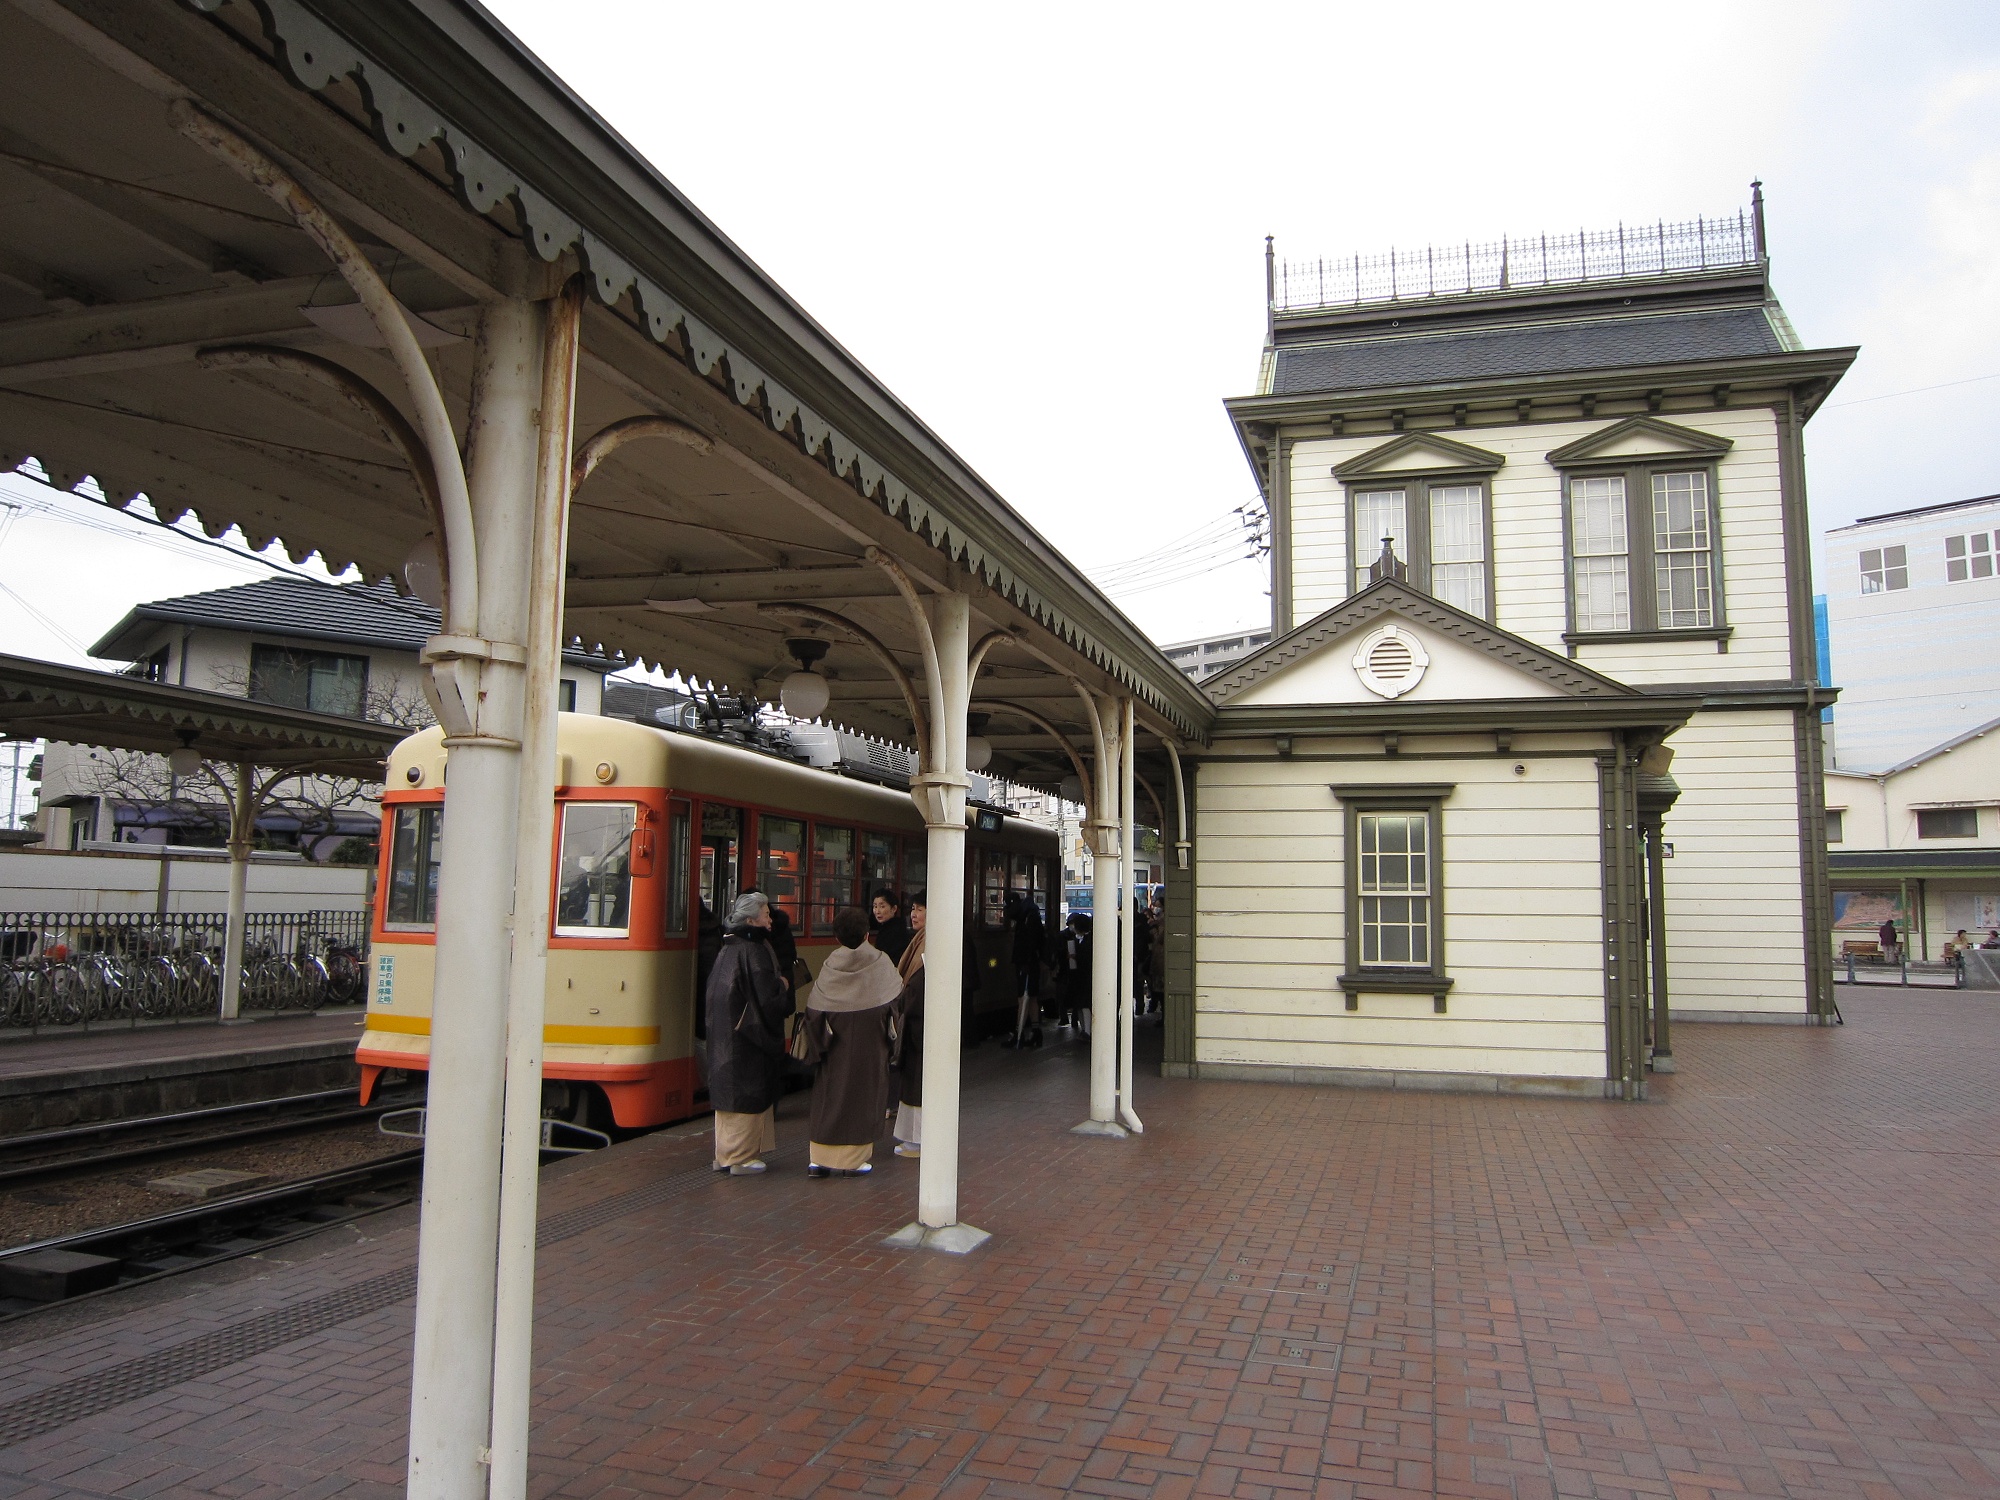 観光の拠点駅であり、職員が常駐しているが、改札はない